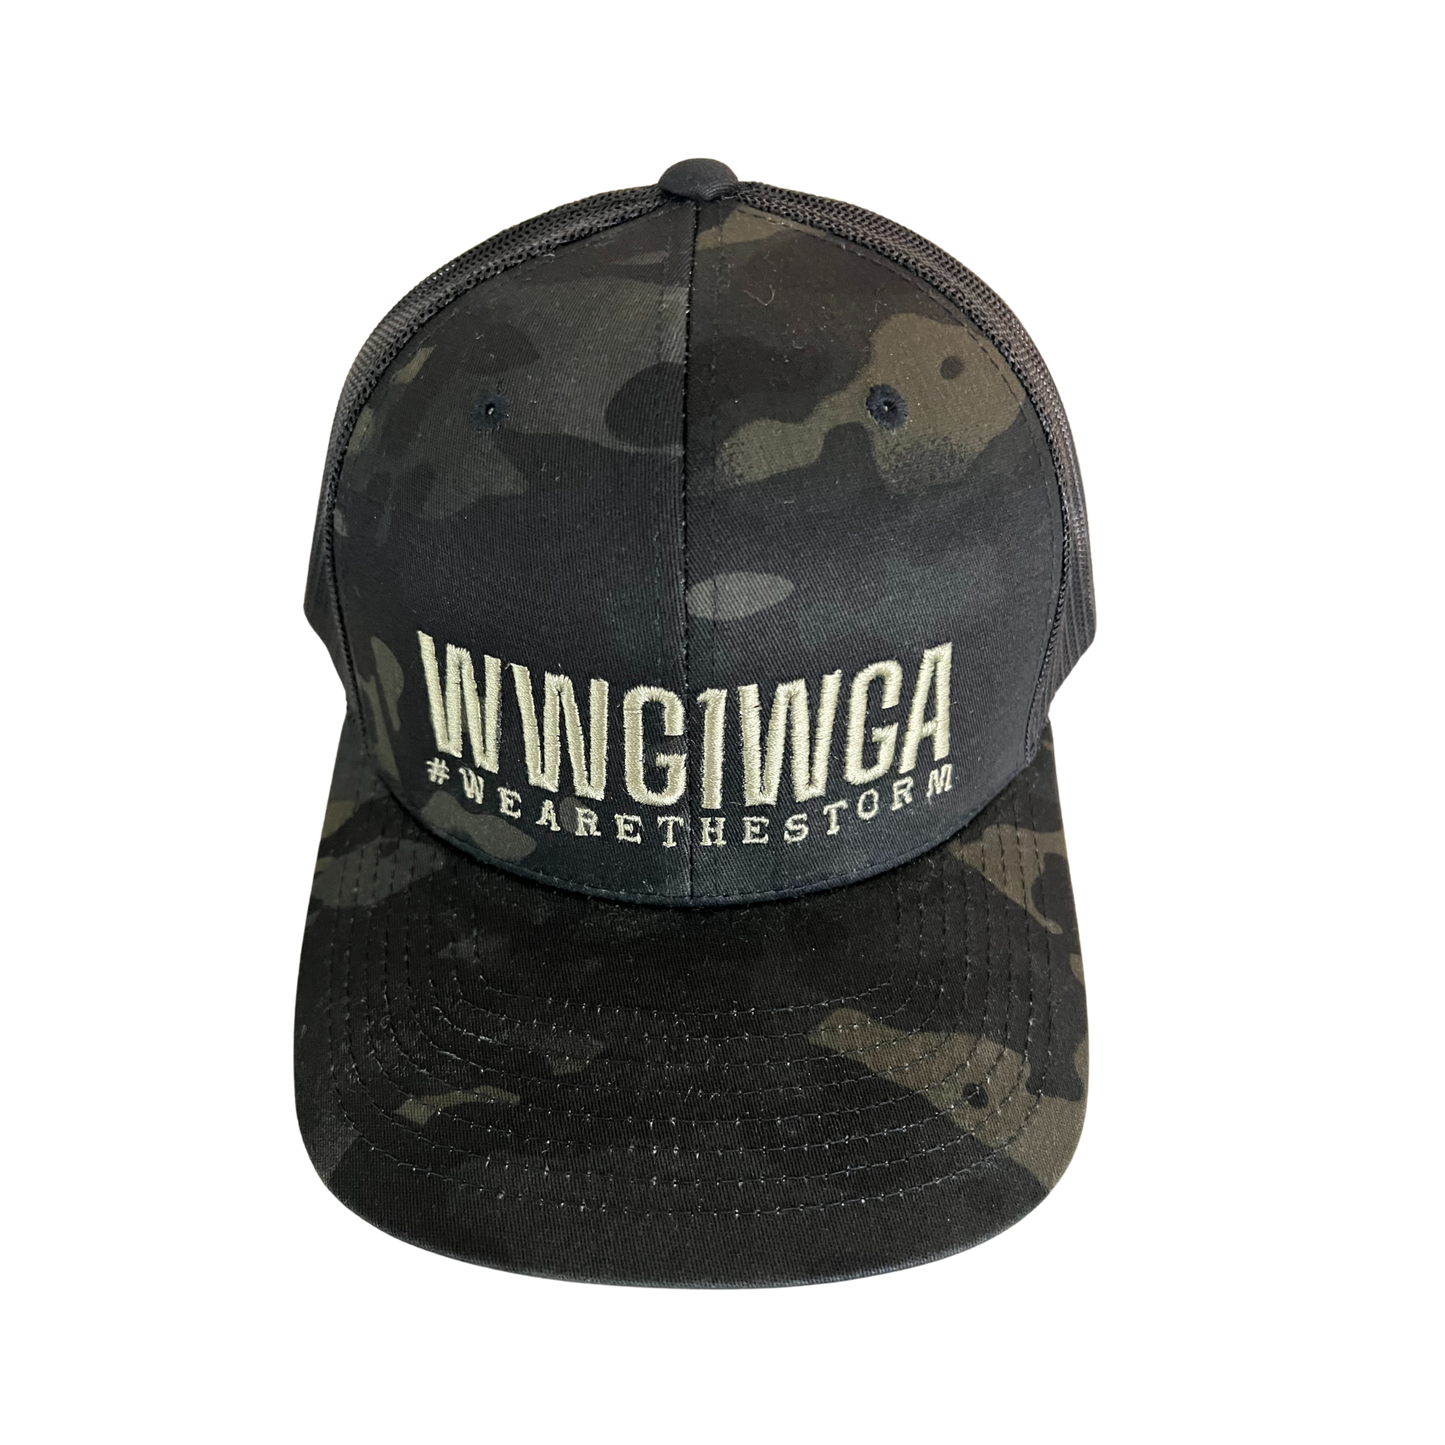 WWG1WGA Trucker Hat